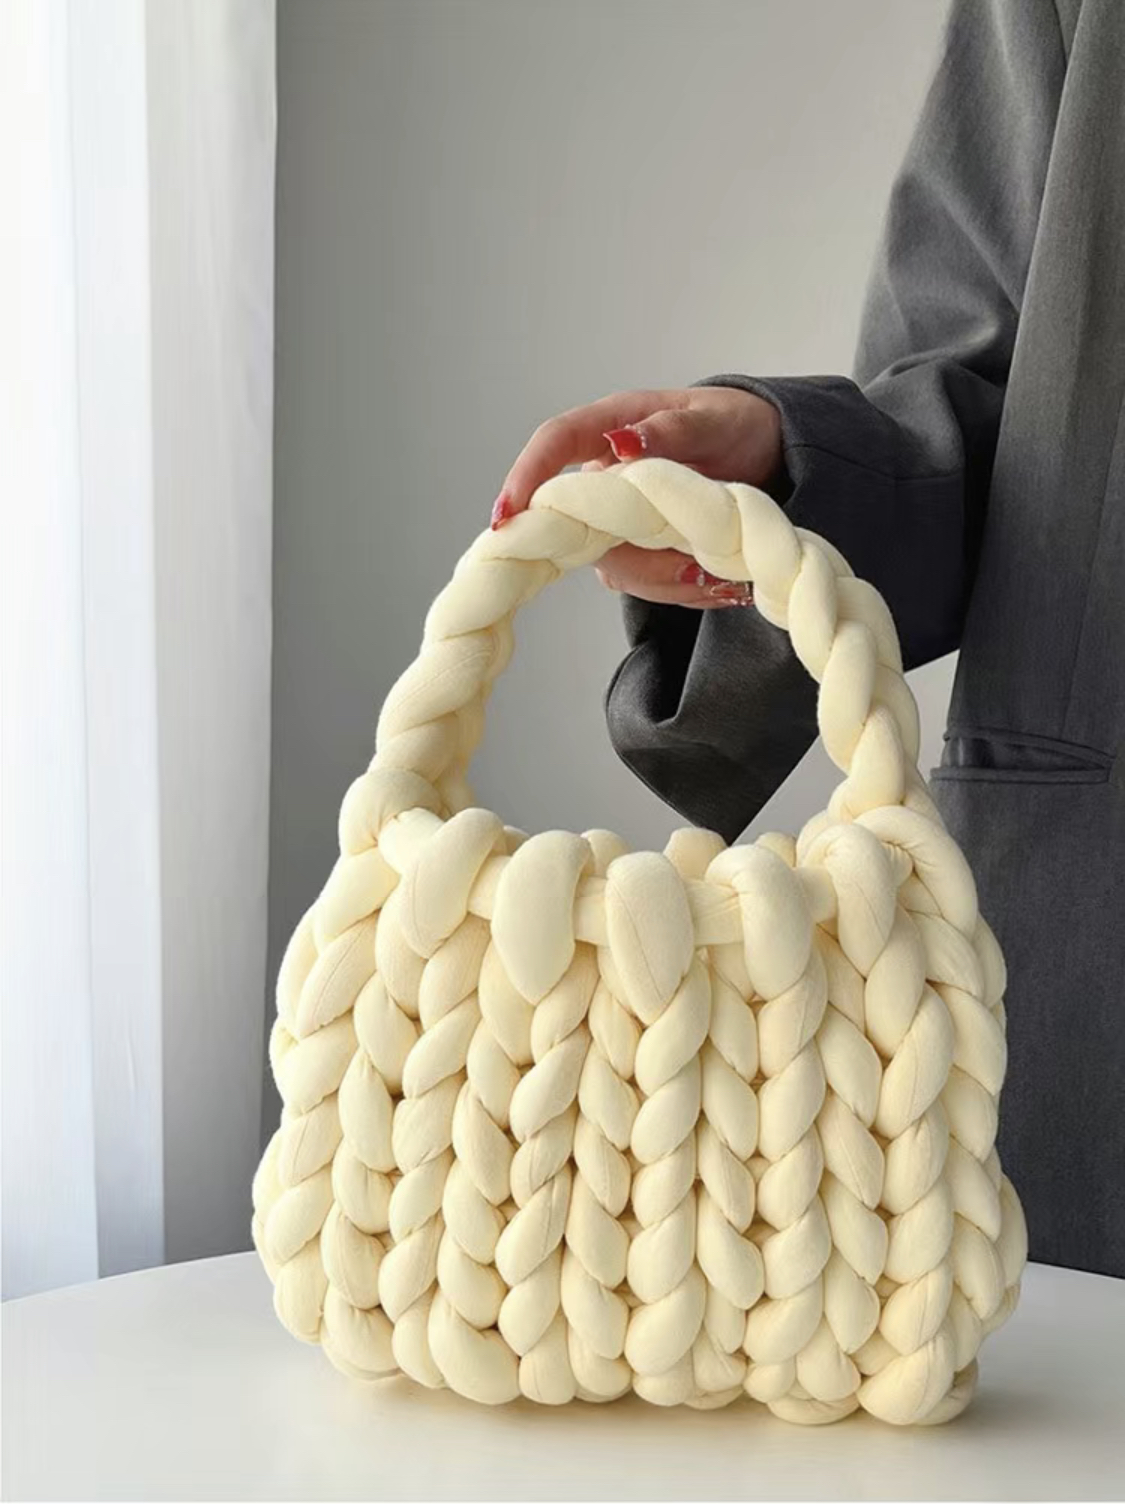 Chunky Yarn Knit Shoulder Bag Thick Bulky Giant Wool Handwoven Handbag